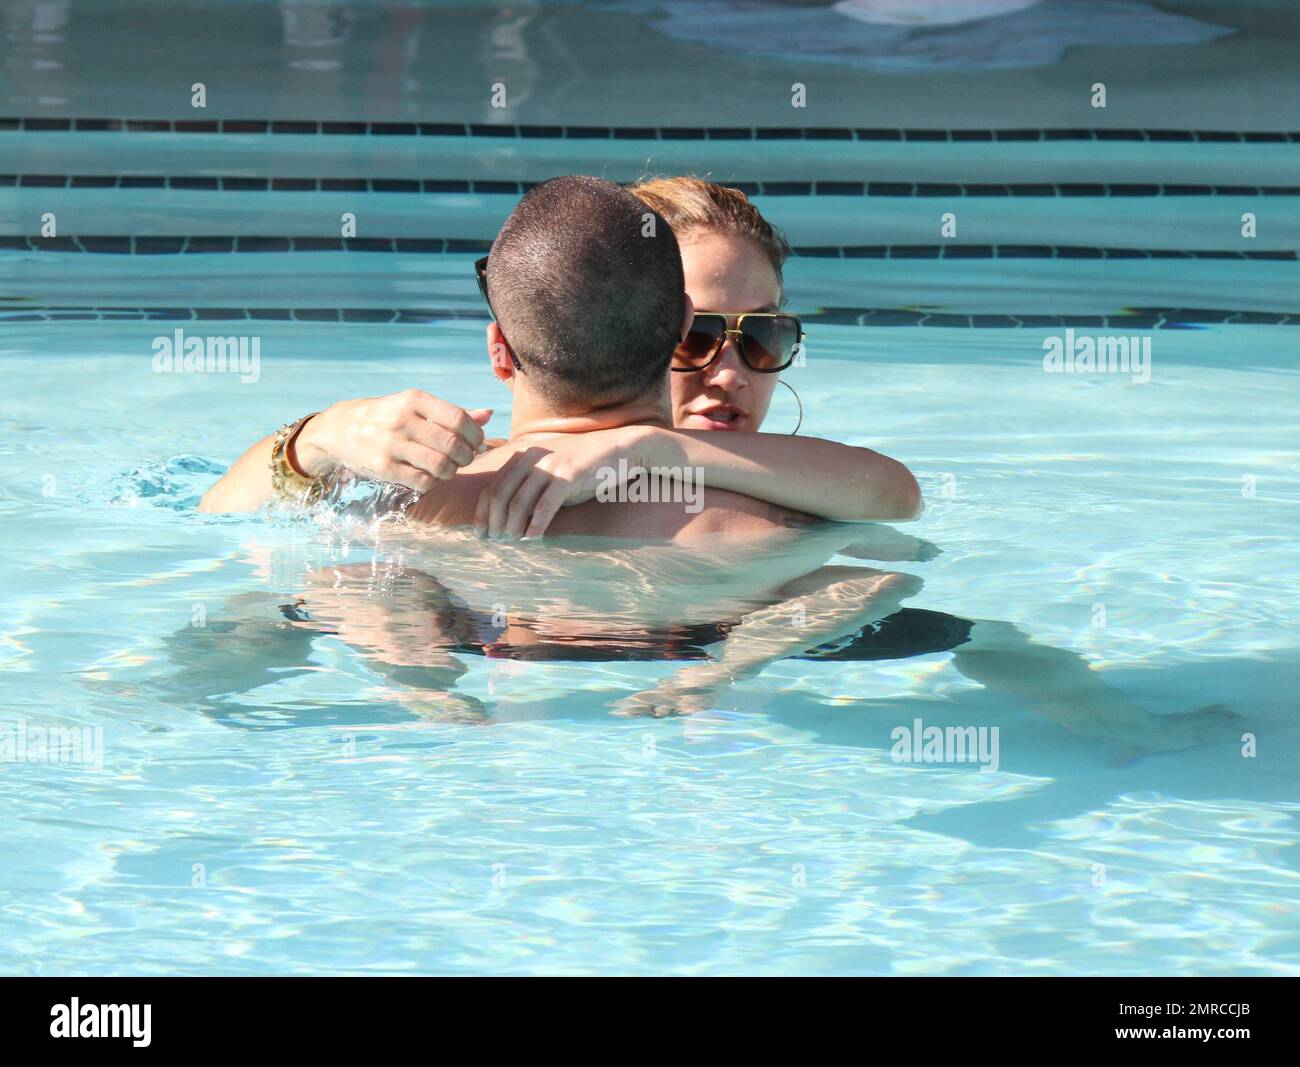 Jennifer Lopez entspannt sich am letzten Tag ihrer gemeinsamen Tour mit Enrique Iglesias mit einem Bad im Pool mit ihrem Freund Casper Smart. Die beiden wurden beim Kuscheln und Küssen gesehen, als sie um den Pool schwammen und Jennifer einmal ihre Beine um ihn wickelte. Casper ging vorhin laufen und brachte zwei Flaschen Wasser mit, mit denen er Fotografen beim Vorbeilaufen bespritzte. Jennifers Zwillinge Max und Emme waren den ganzen Nachmittag am Pool und warteten auf ihre mutter, die um 3pm Uhr zu ihnen kam. Miami Beach, Florida 1. September 2012 Stockfoto